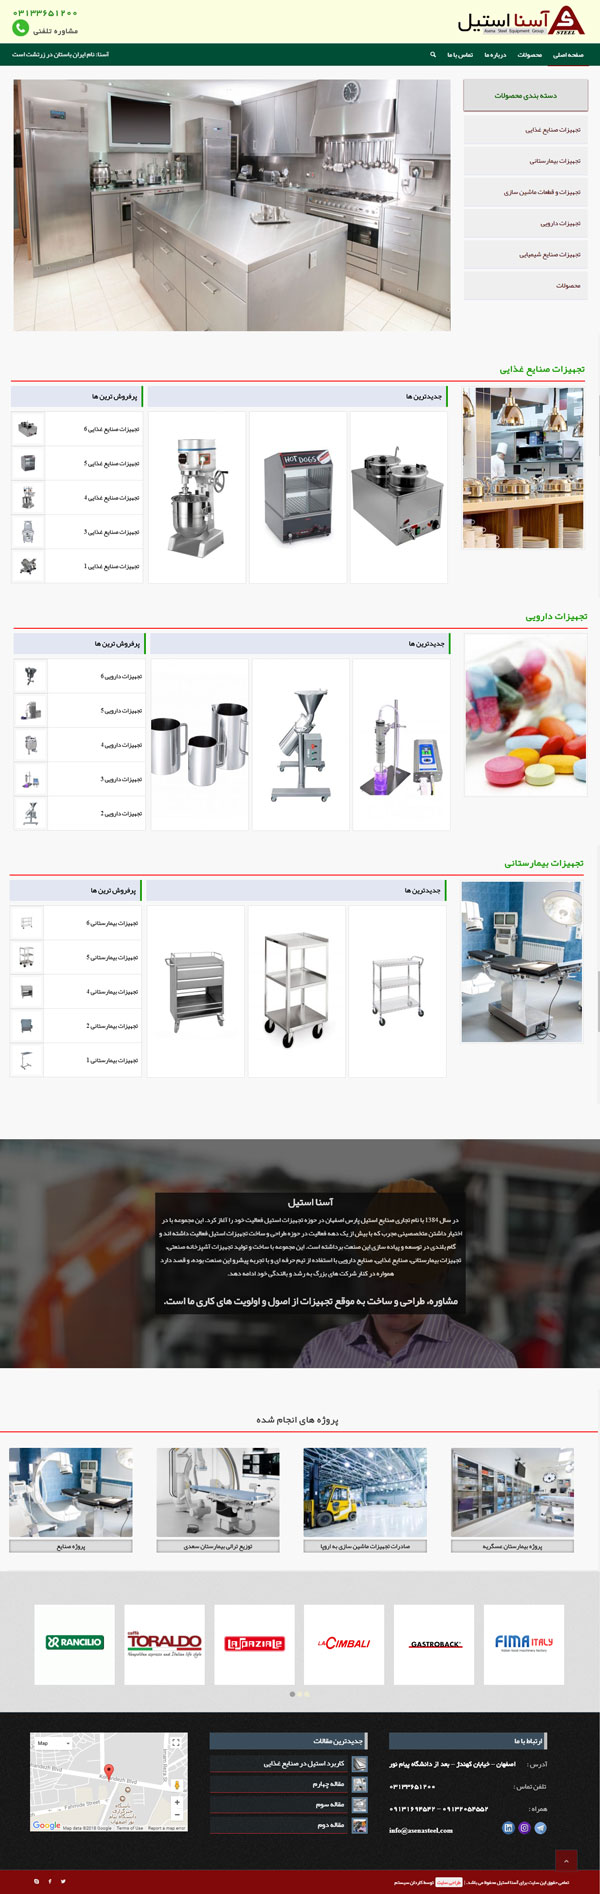 طراحی سایت آسنا استیل | تجهیزات استیل آشپزخانه